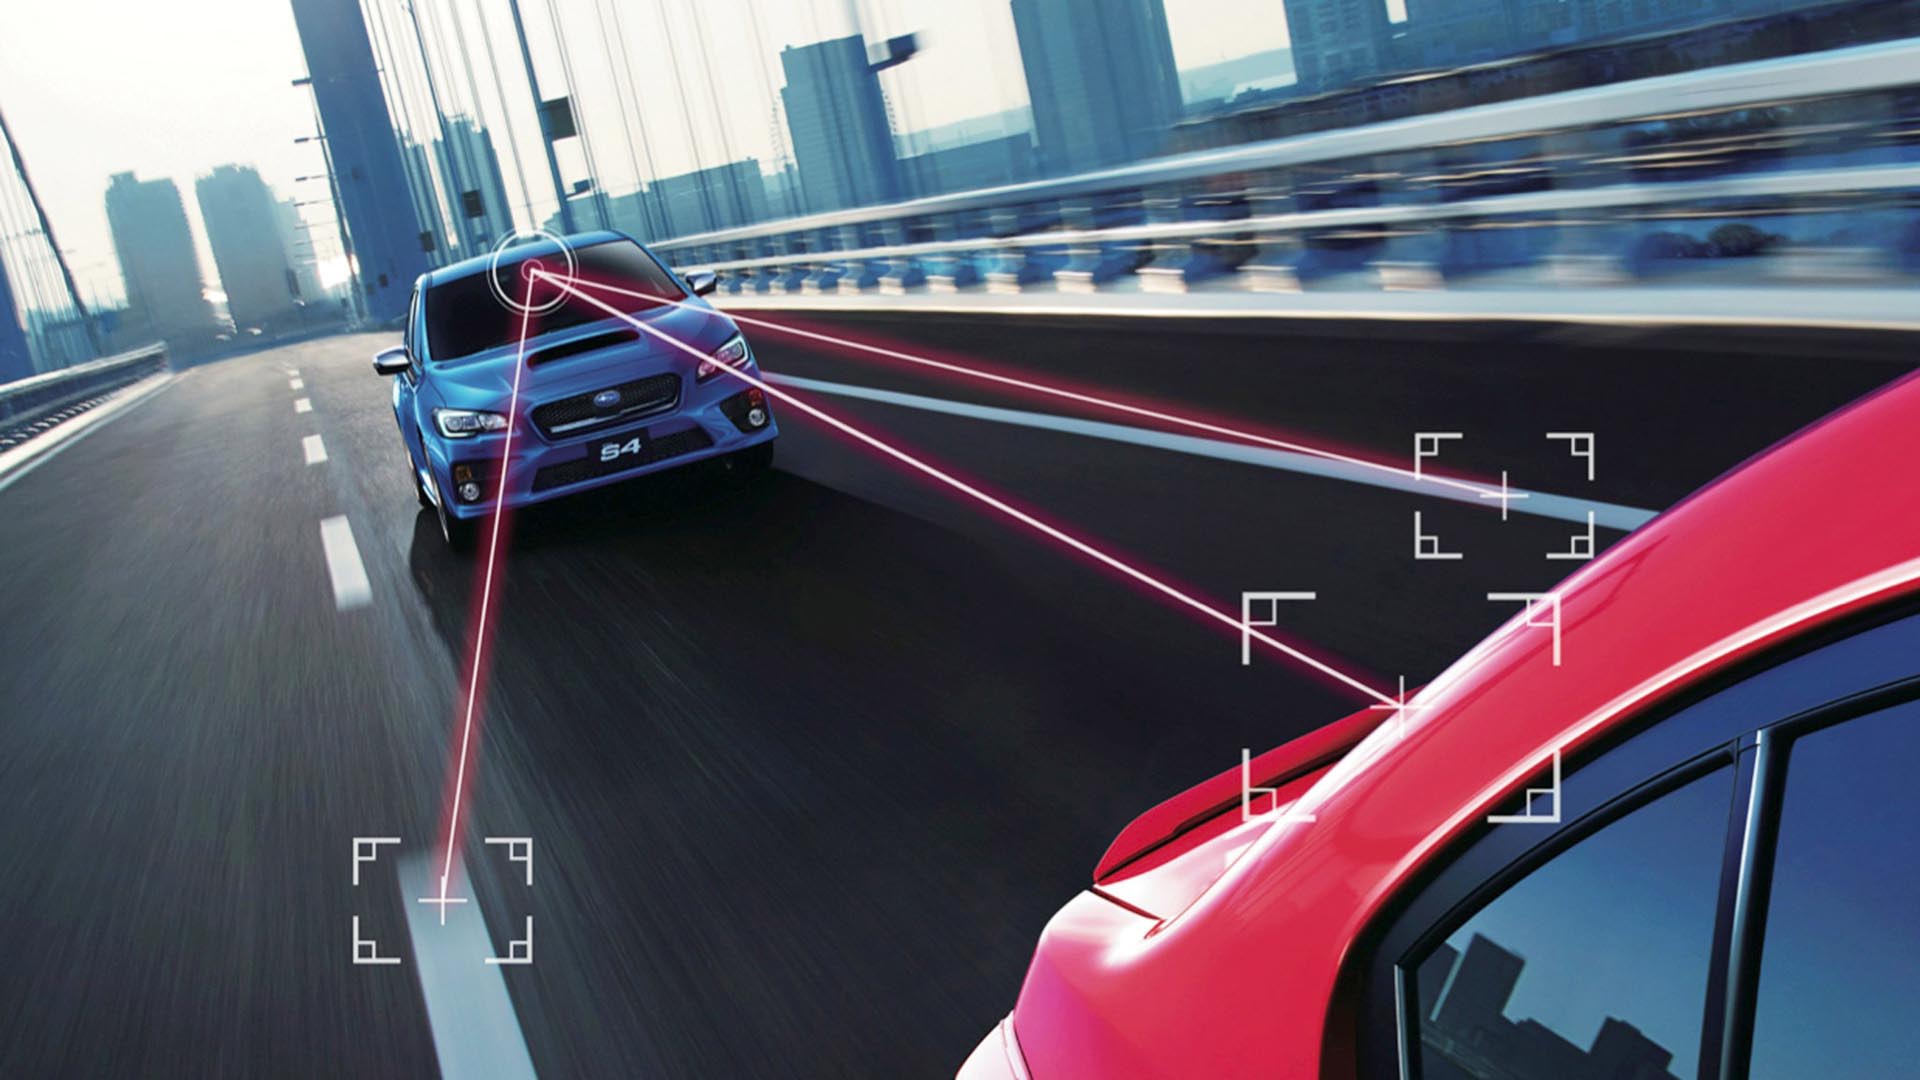 Según Subaru, el objetivo no es la conducción autónoma total, sino lograr la tasa de cero muertes en accidentes viales para 2030 con sus modelos